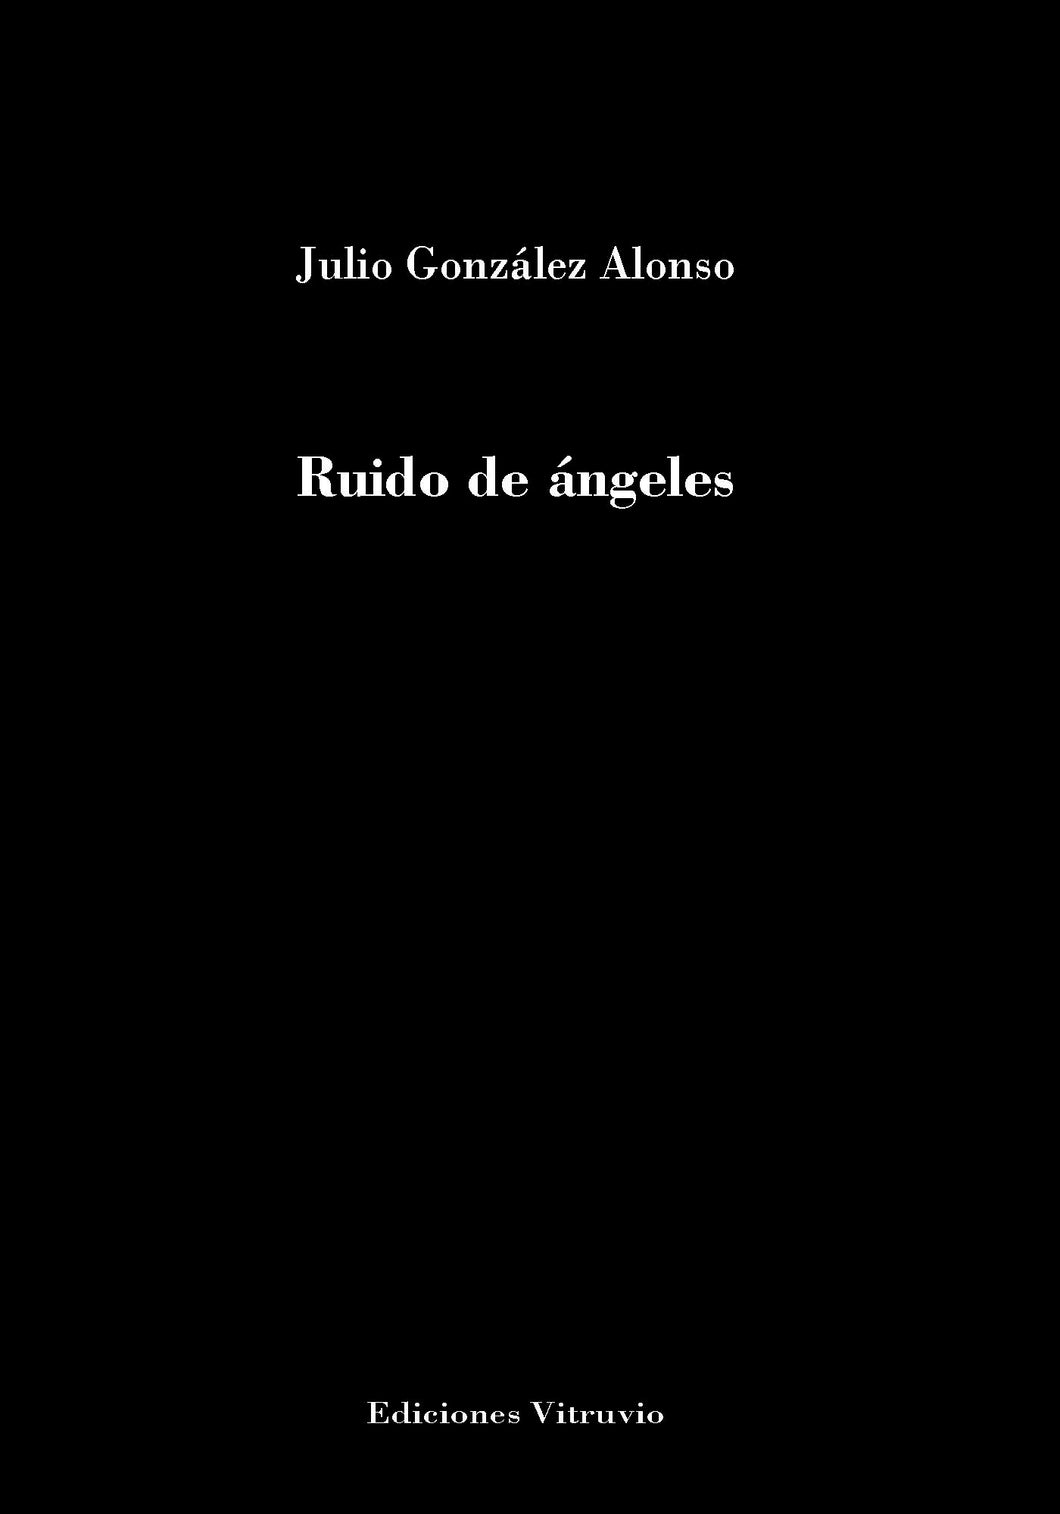 Ruido de ángeles, de Julio González Alonso